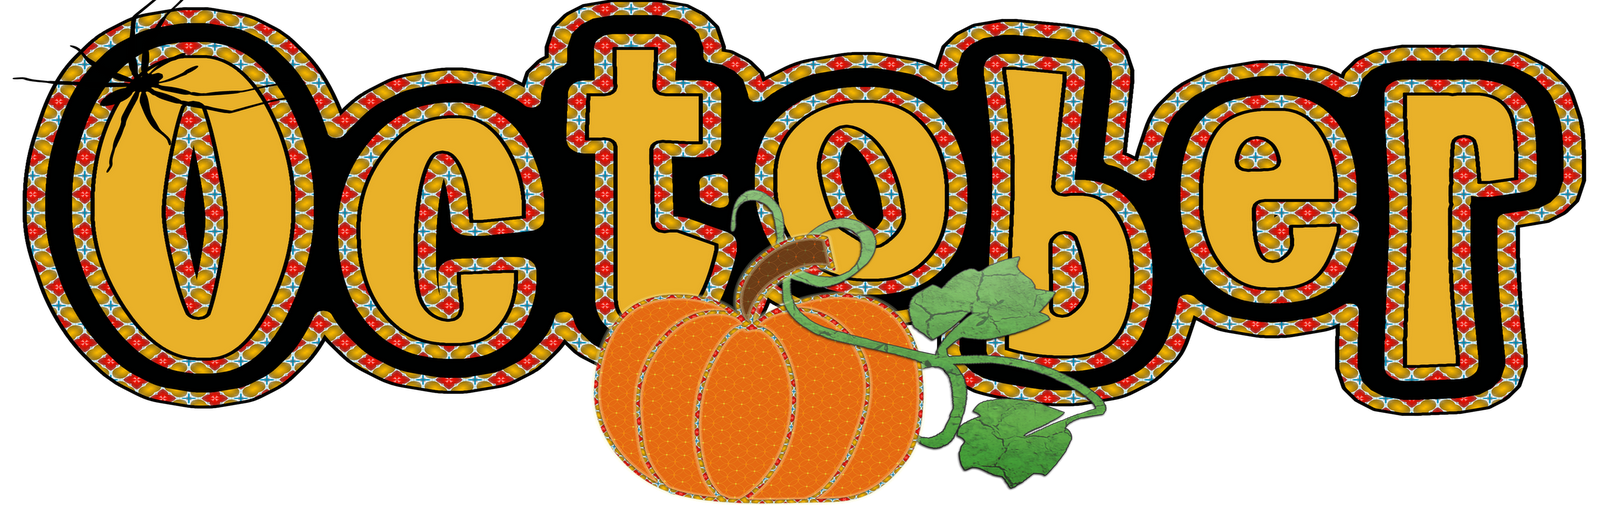 October clipart pumpkin design. The am teacher let